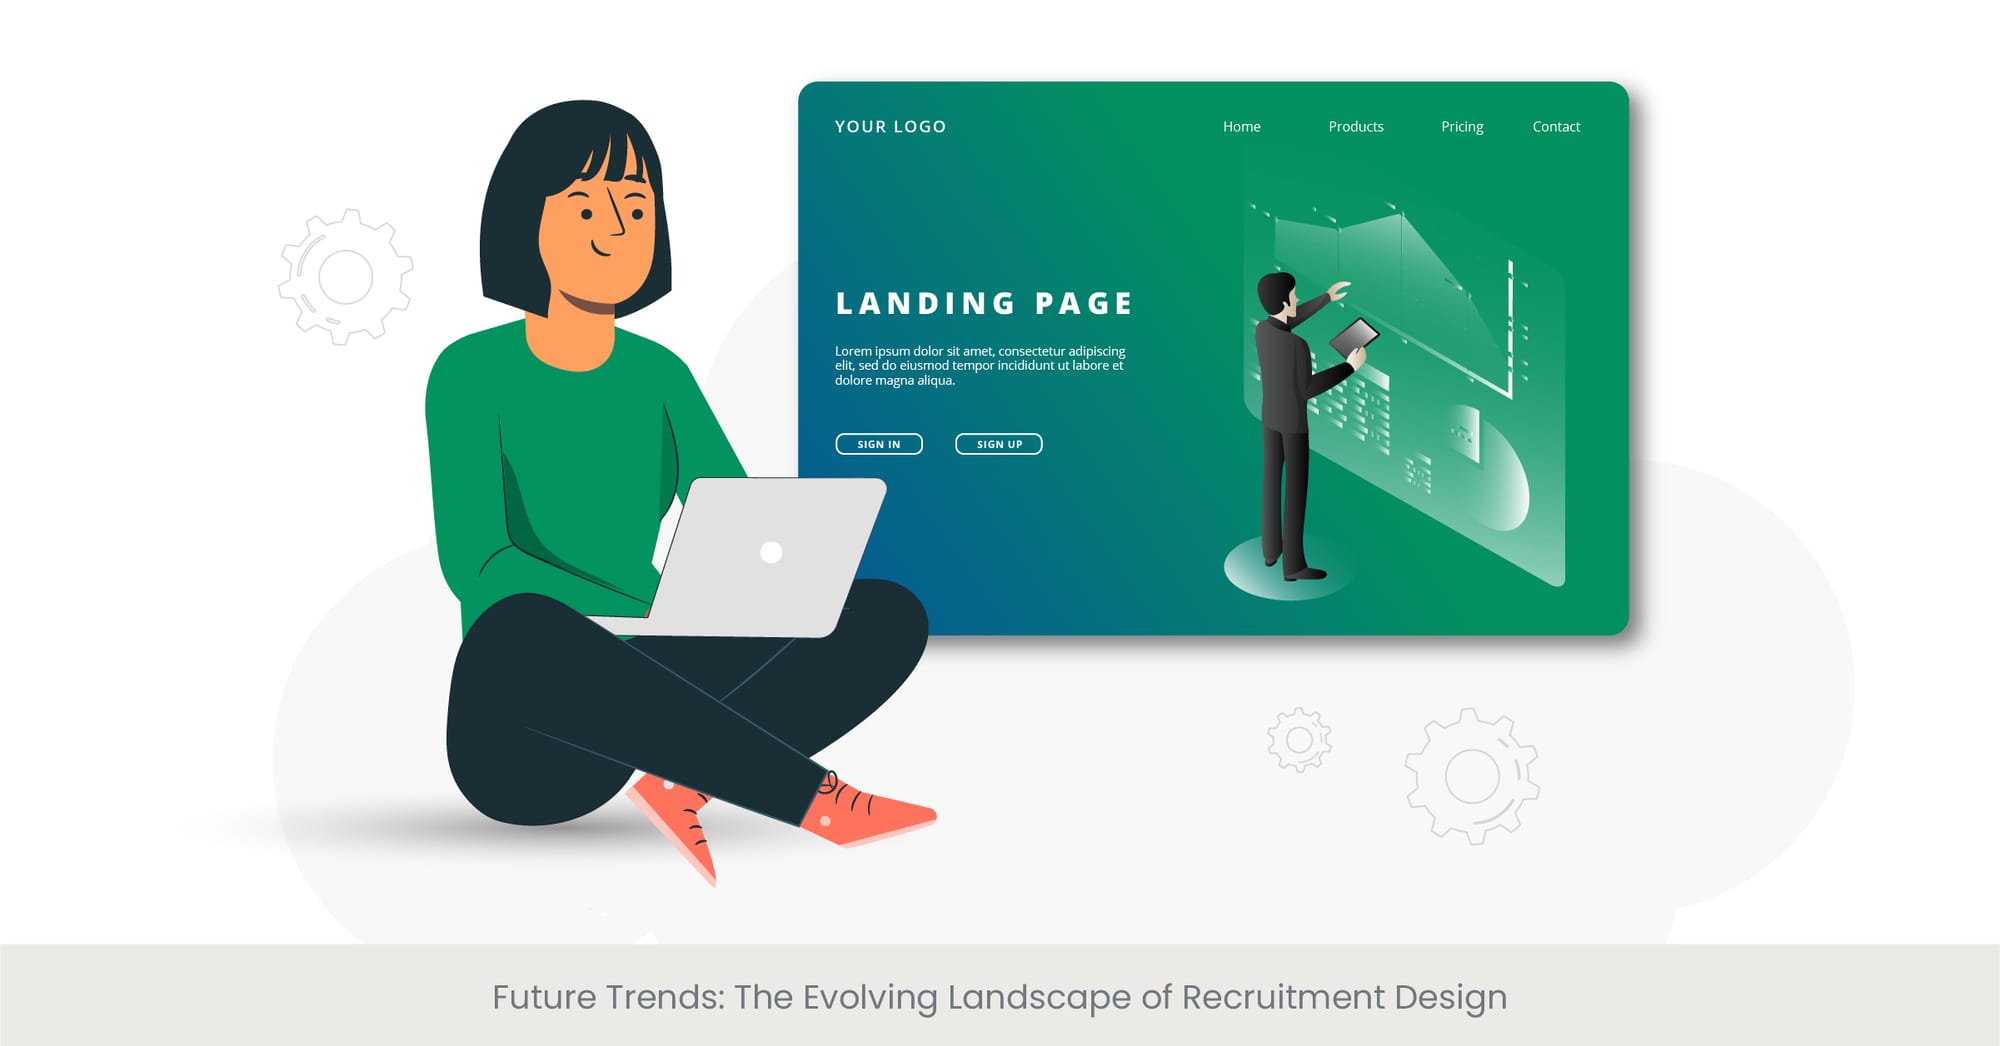 Future Trends: The Evolving Landscape of Recruitment Design